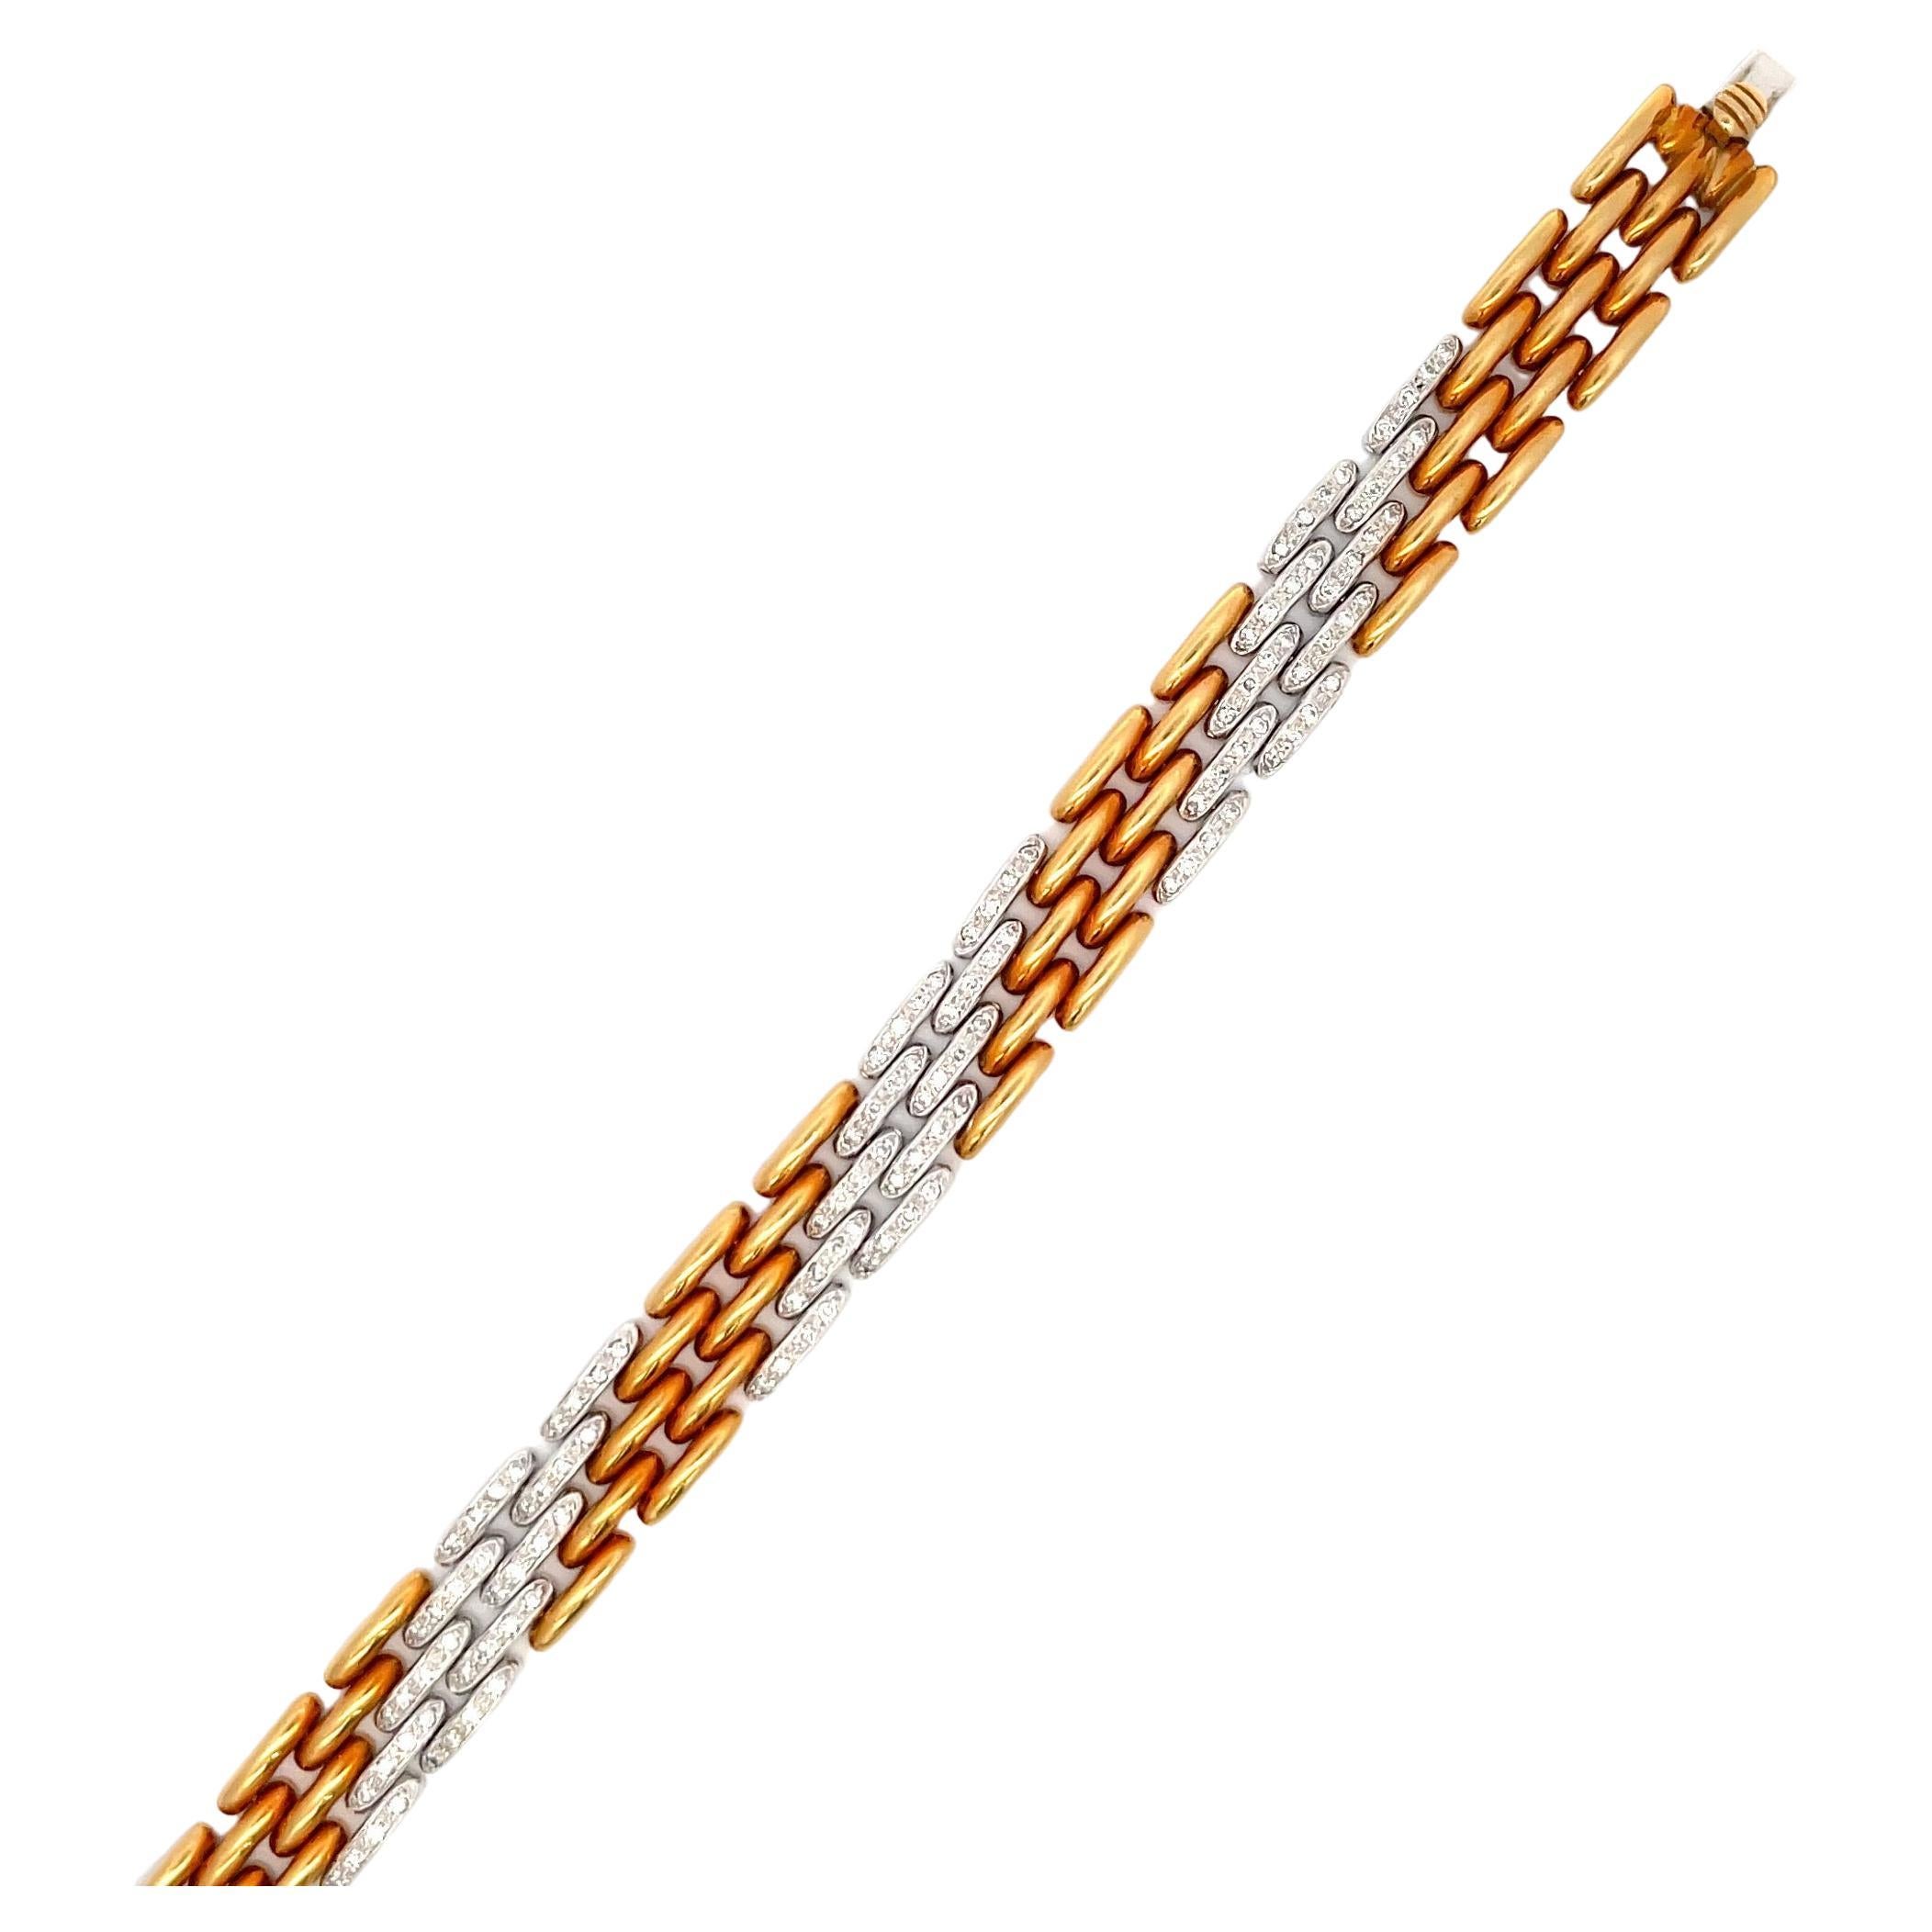 Armband mit Panther-Motiv aus 18 Karat Gelbgold mit 5 Reihen aus 18 Karat Gelbgold und Diamant mit einem Gewicht von 1,25 Karat, 36,1 Gramm.